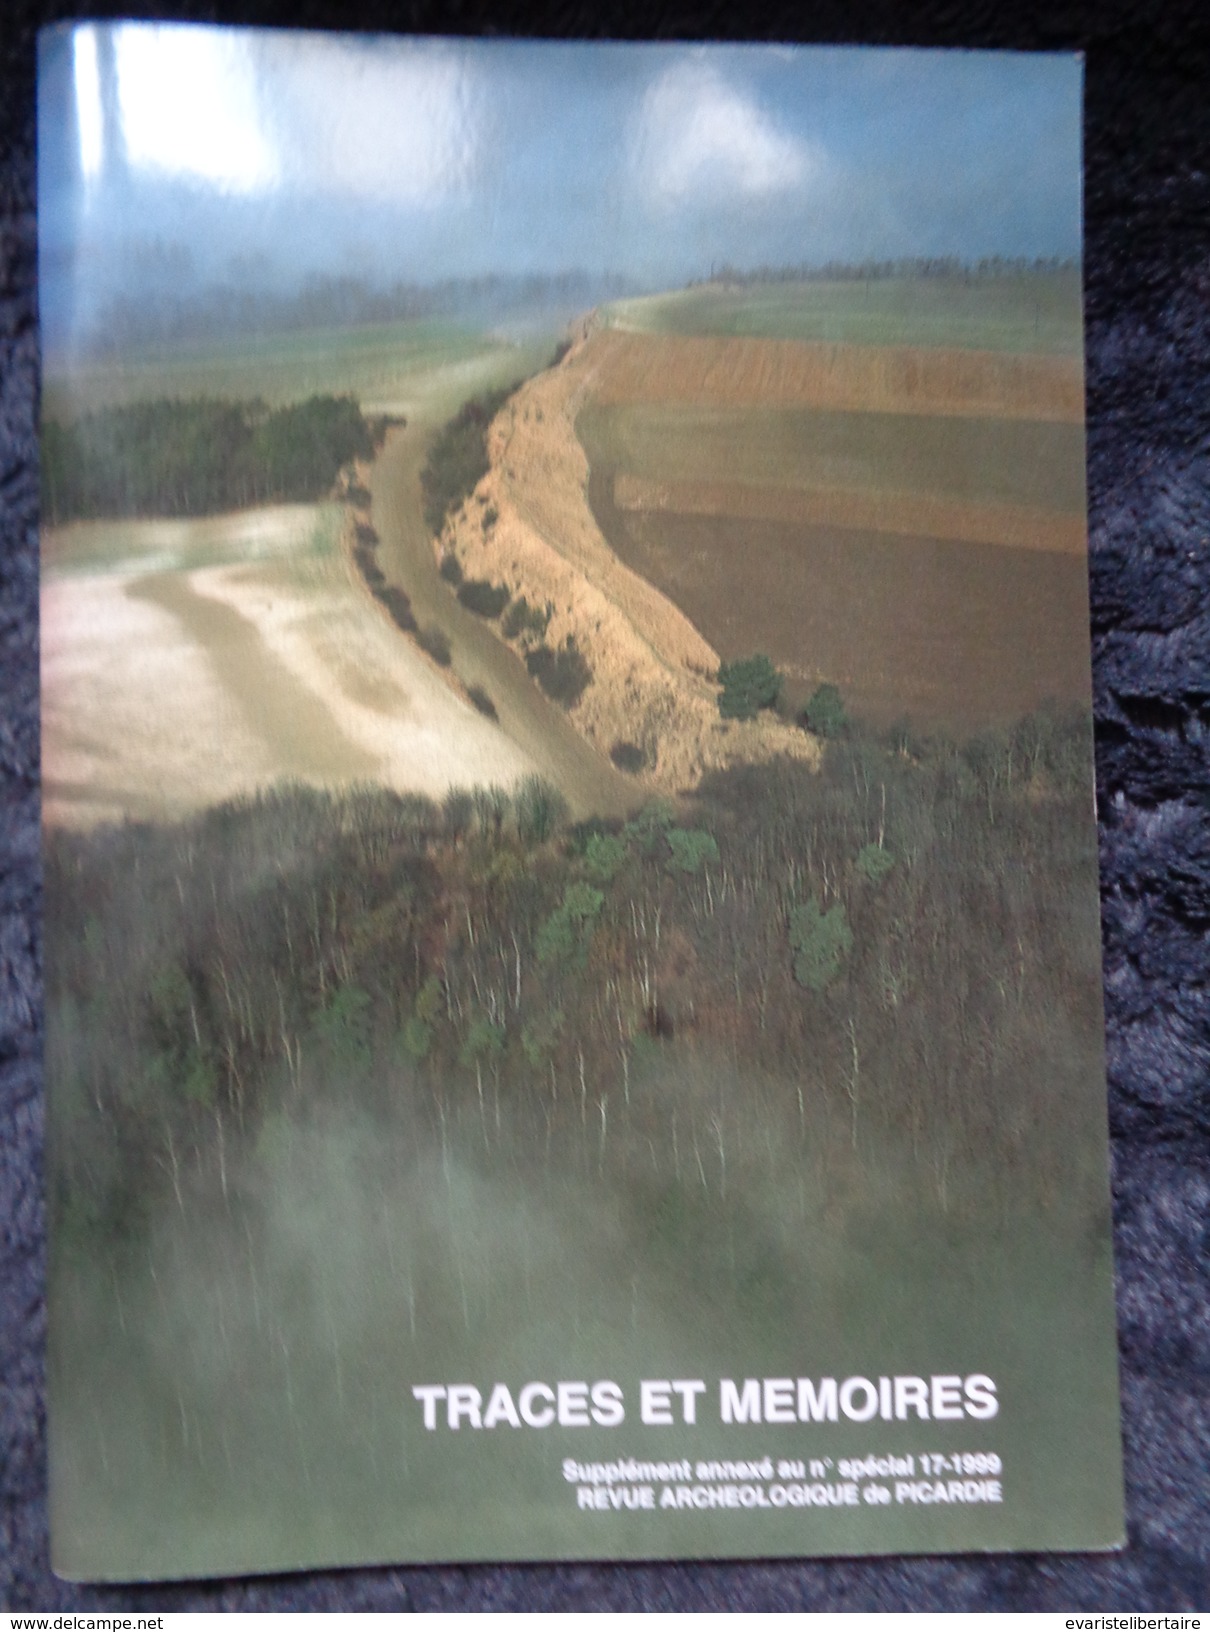 Traces Et Mémoires ,suplément Annexé Au N° Spécial 17-1999 Revue Archéologique De Picardie - Picardie - Nord-Pas-de-Calais